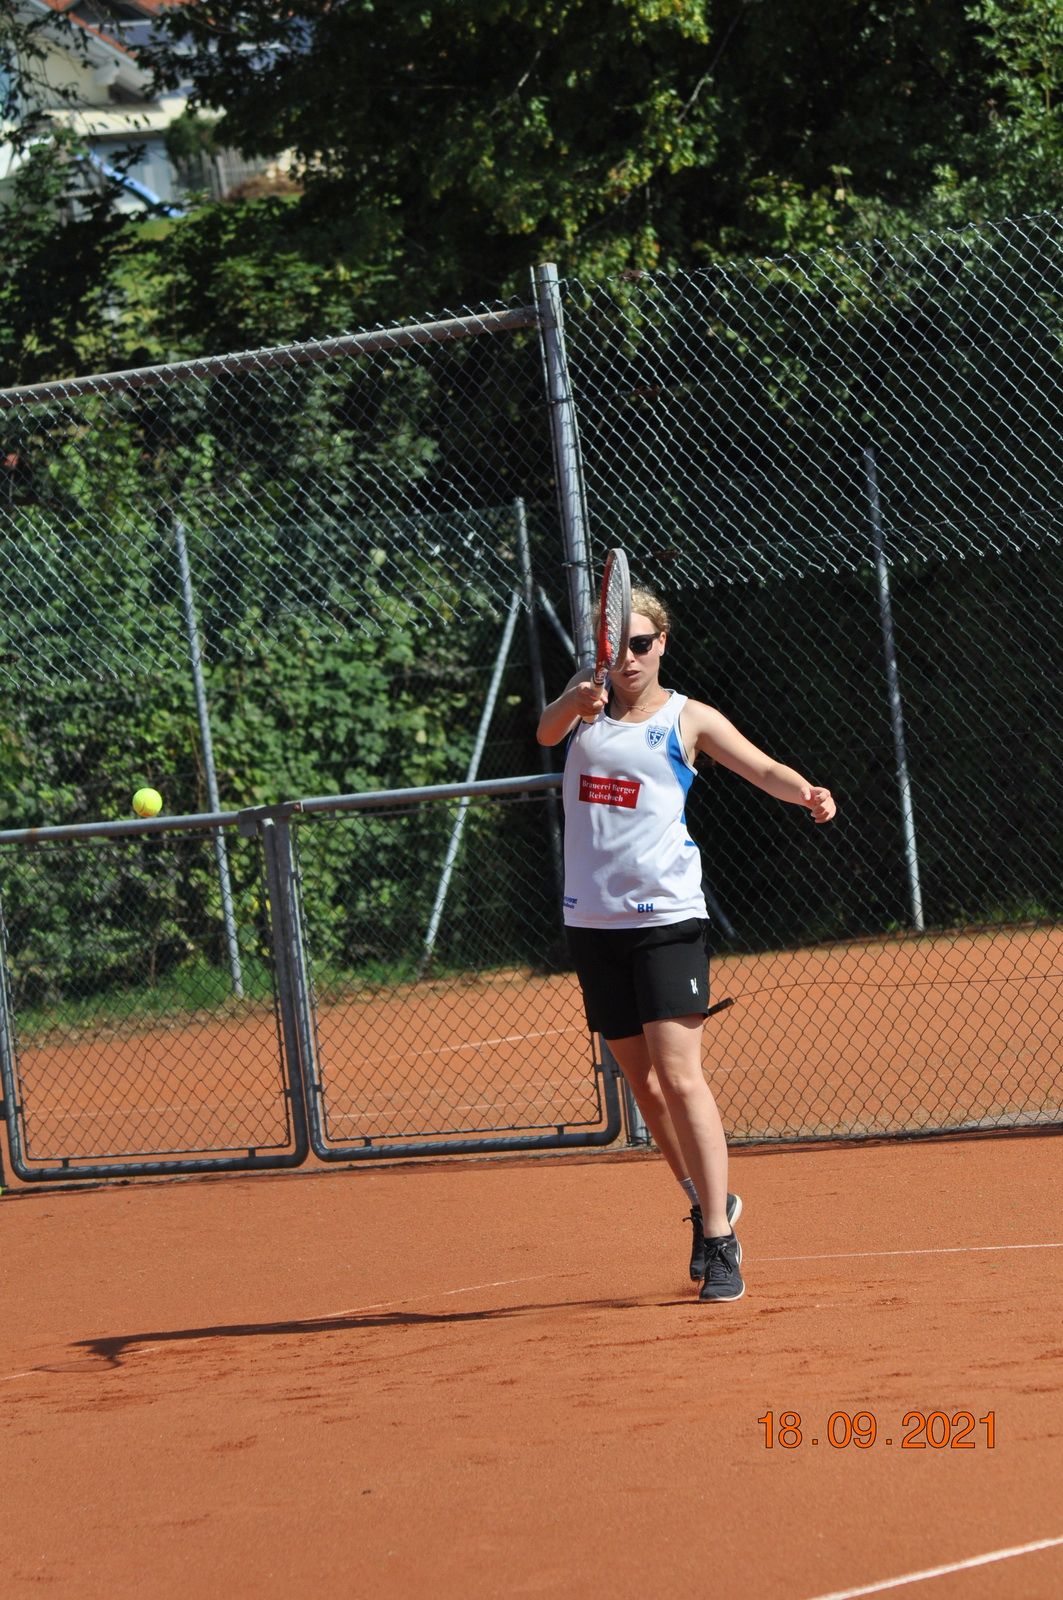 Tennis-OM-2021-15